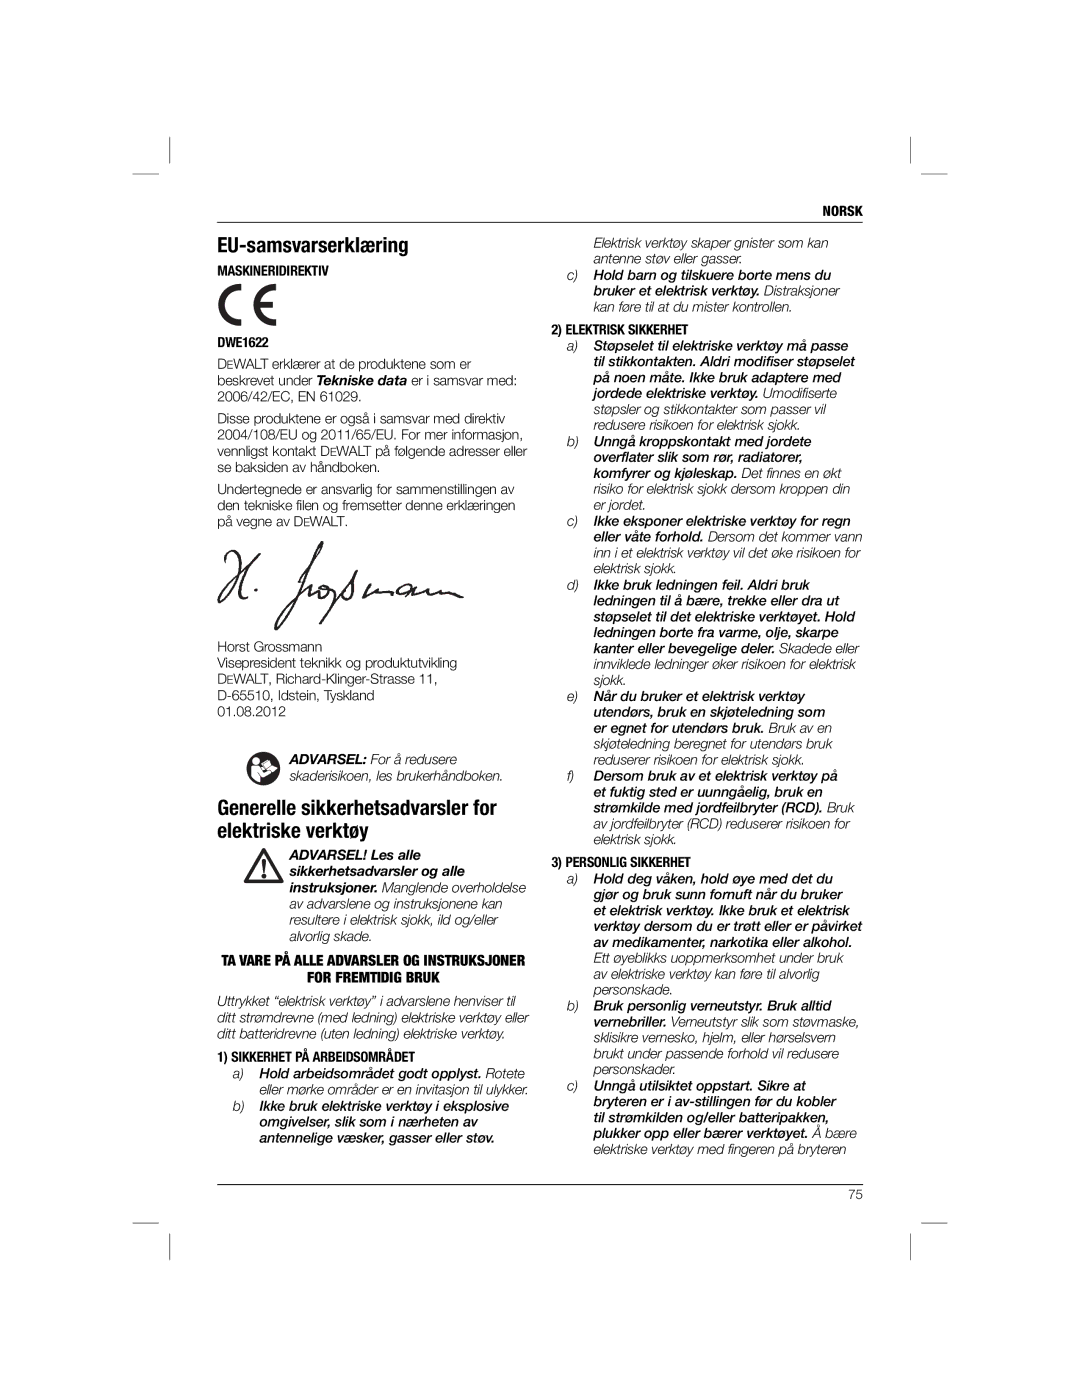 DeWalt DWE1622K manual EU-samsvarserklæring, Generelle sikkerhetsadvarsler for elektriske verktøy, For Fremtidig Bruk 